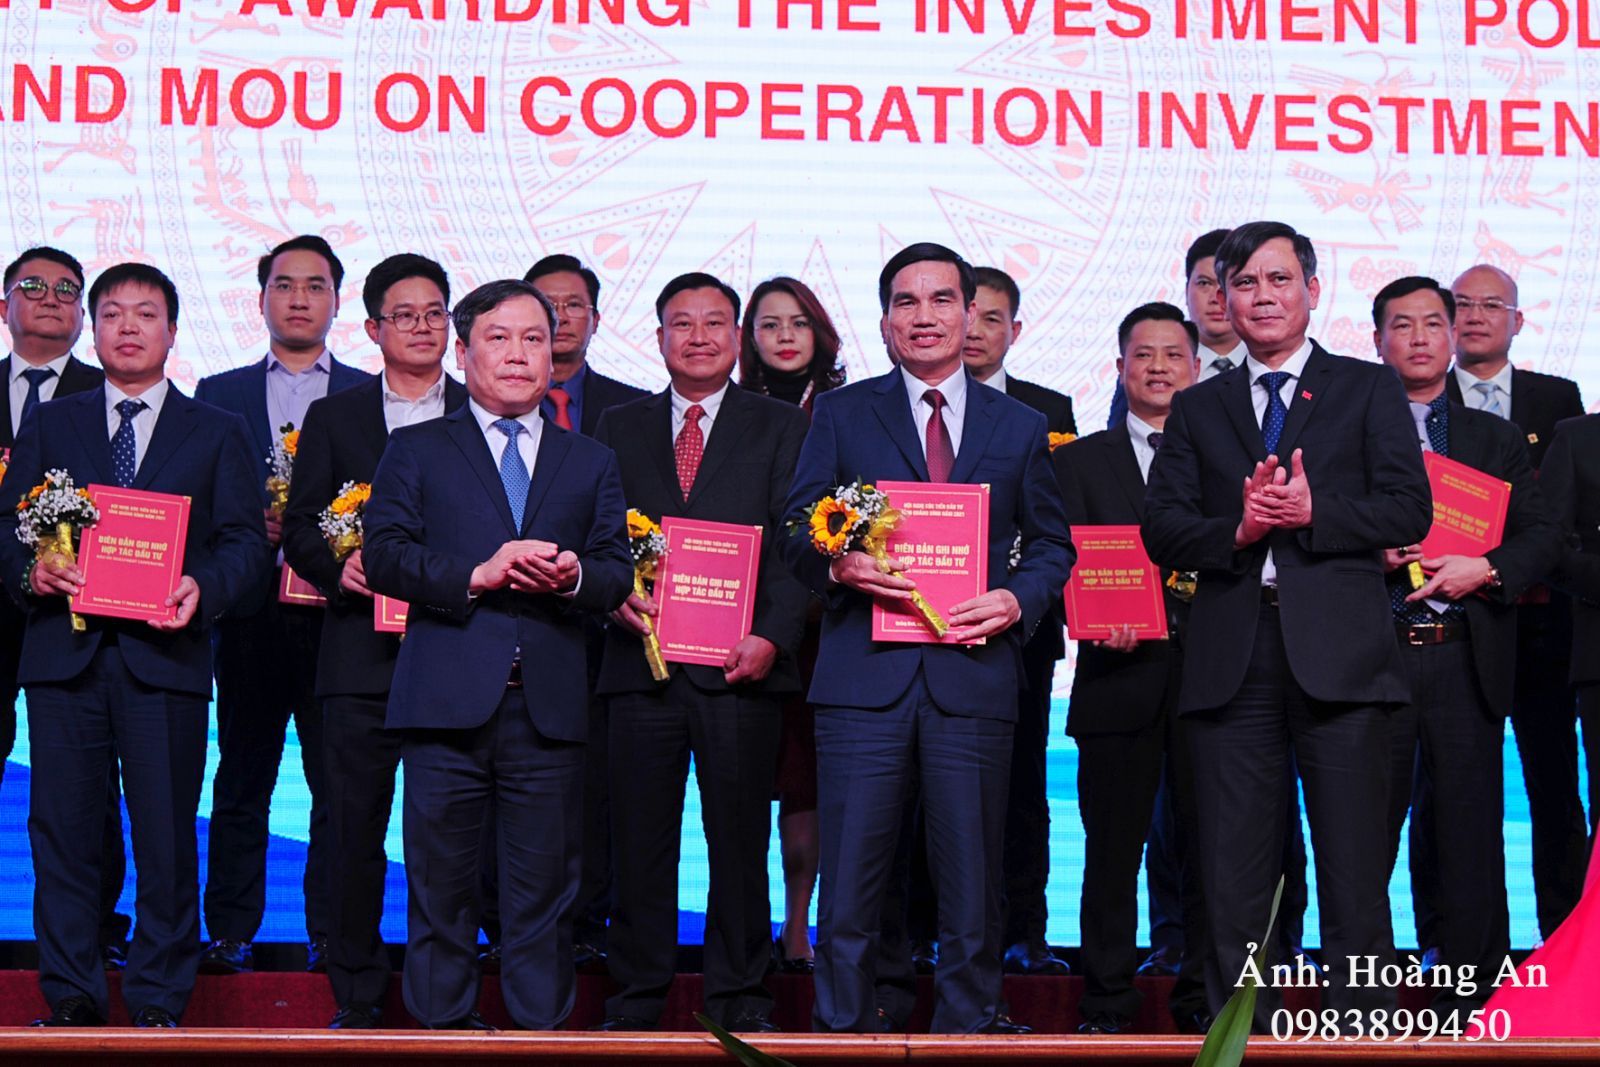 ại Hội nghị xúc tiến đầu tư năm 2021, Lãnh đạo tỉnh Quảng Bình đã trao quyết định chủ trương đầu tư và biên bản ghi nhớ hợp tác đầu tư cho 28 nhà đầu tư thực hiện 35 dự án với tổng vốn đăng ký hơn 92.000 tỷ đồng